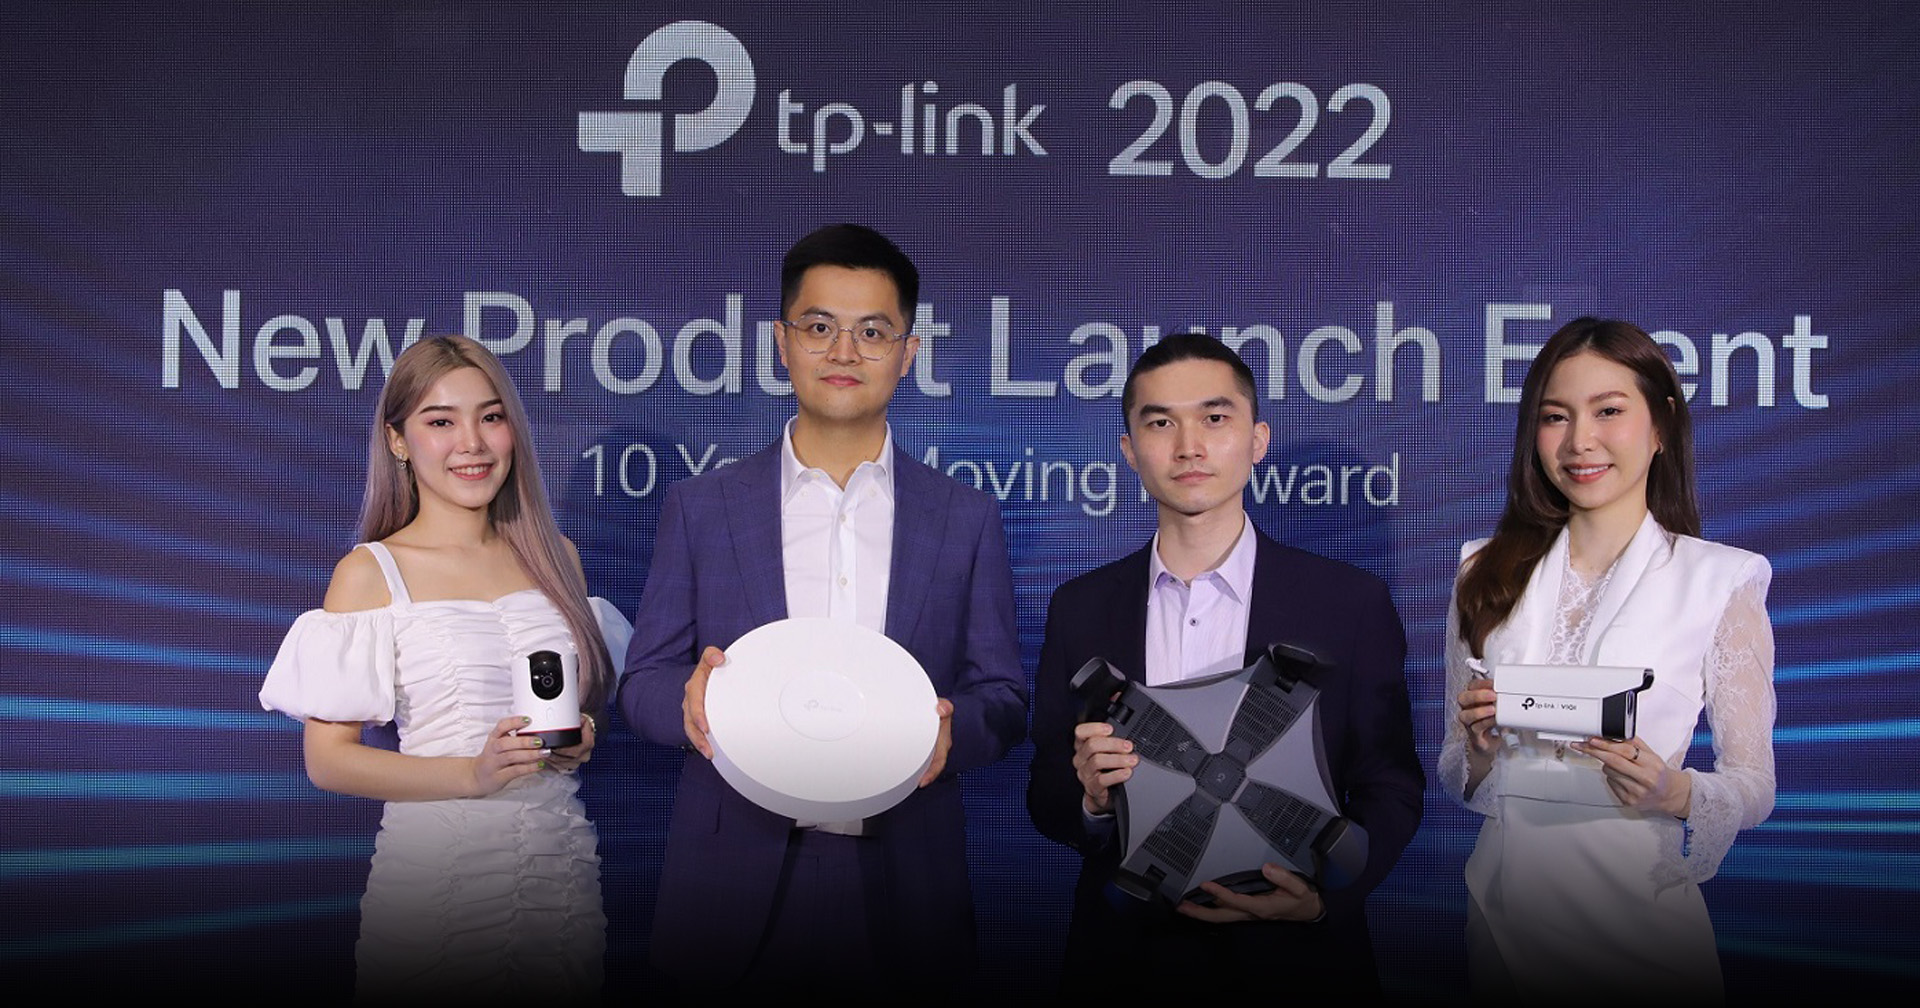 ก้าวสู่ปีที่ 10 TP-Link  ผู้นำเทคโนโลยีด้านเครือข่าย WI-FI และอุปกรณ์ IoT ในปี 2022